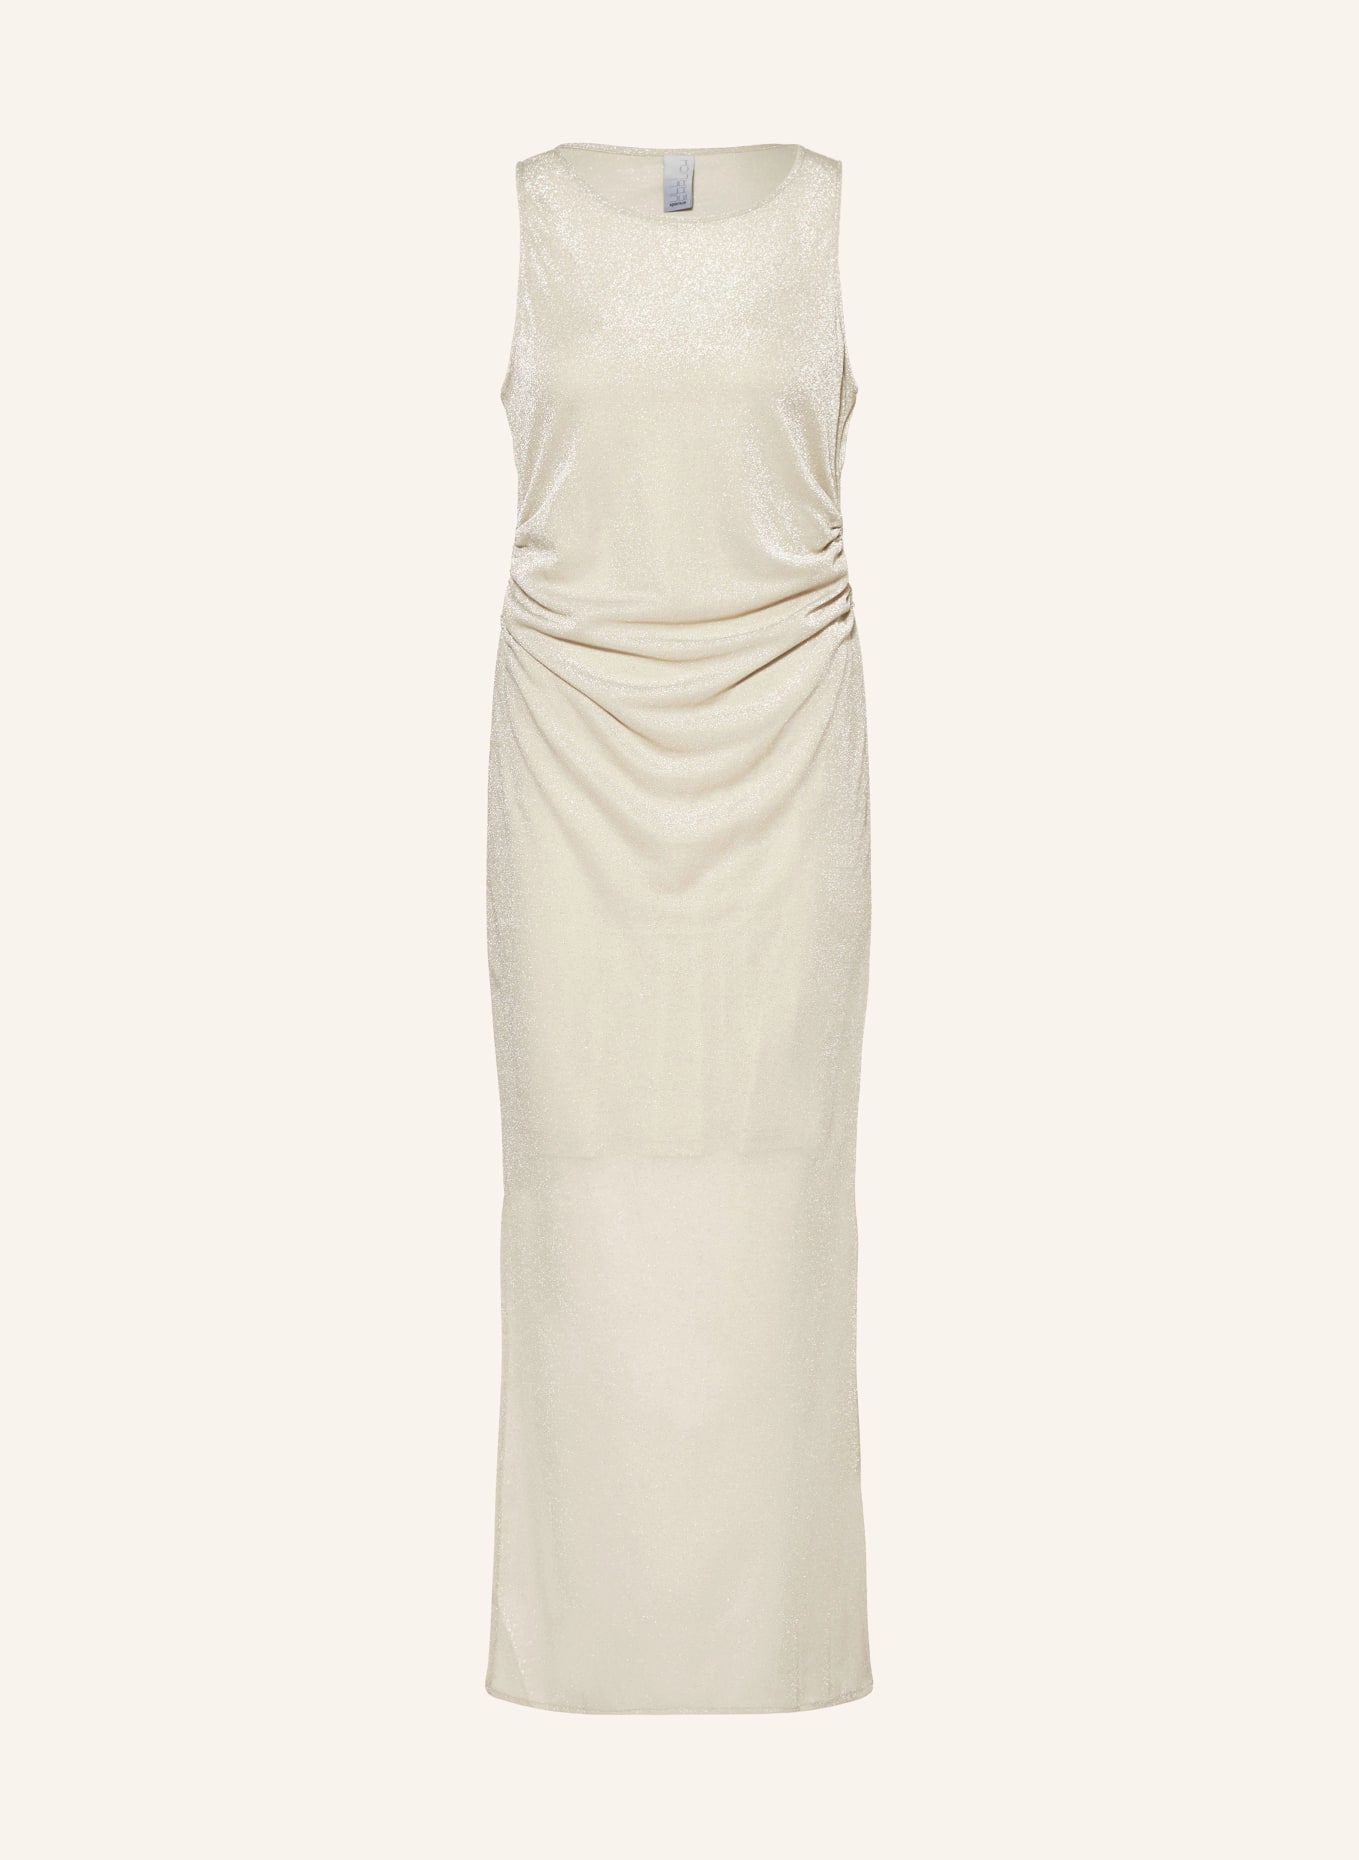 ULLI EHRLICH SPORTALM Dress, Color: CREAM (Image 1)